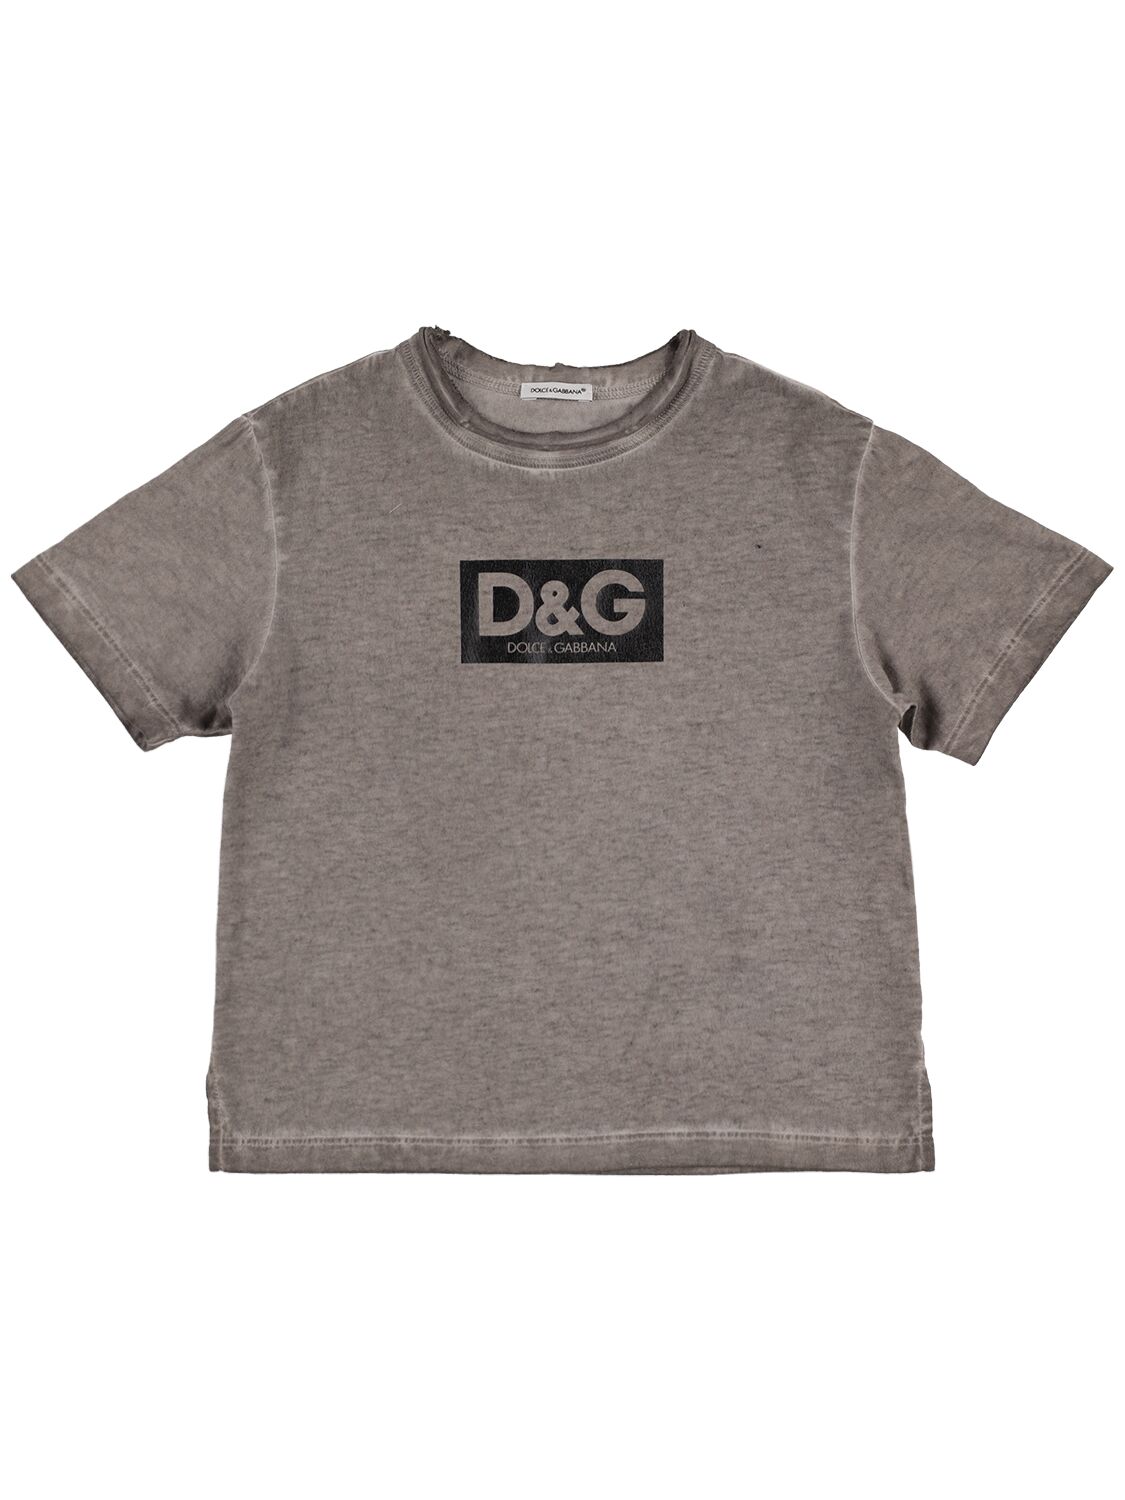 Dolce & Gabbana Kids' Logo印花棉质平纹针织t恤 In Dark Grey